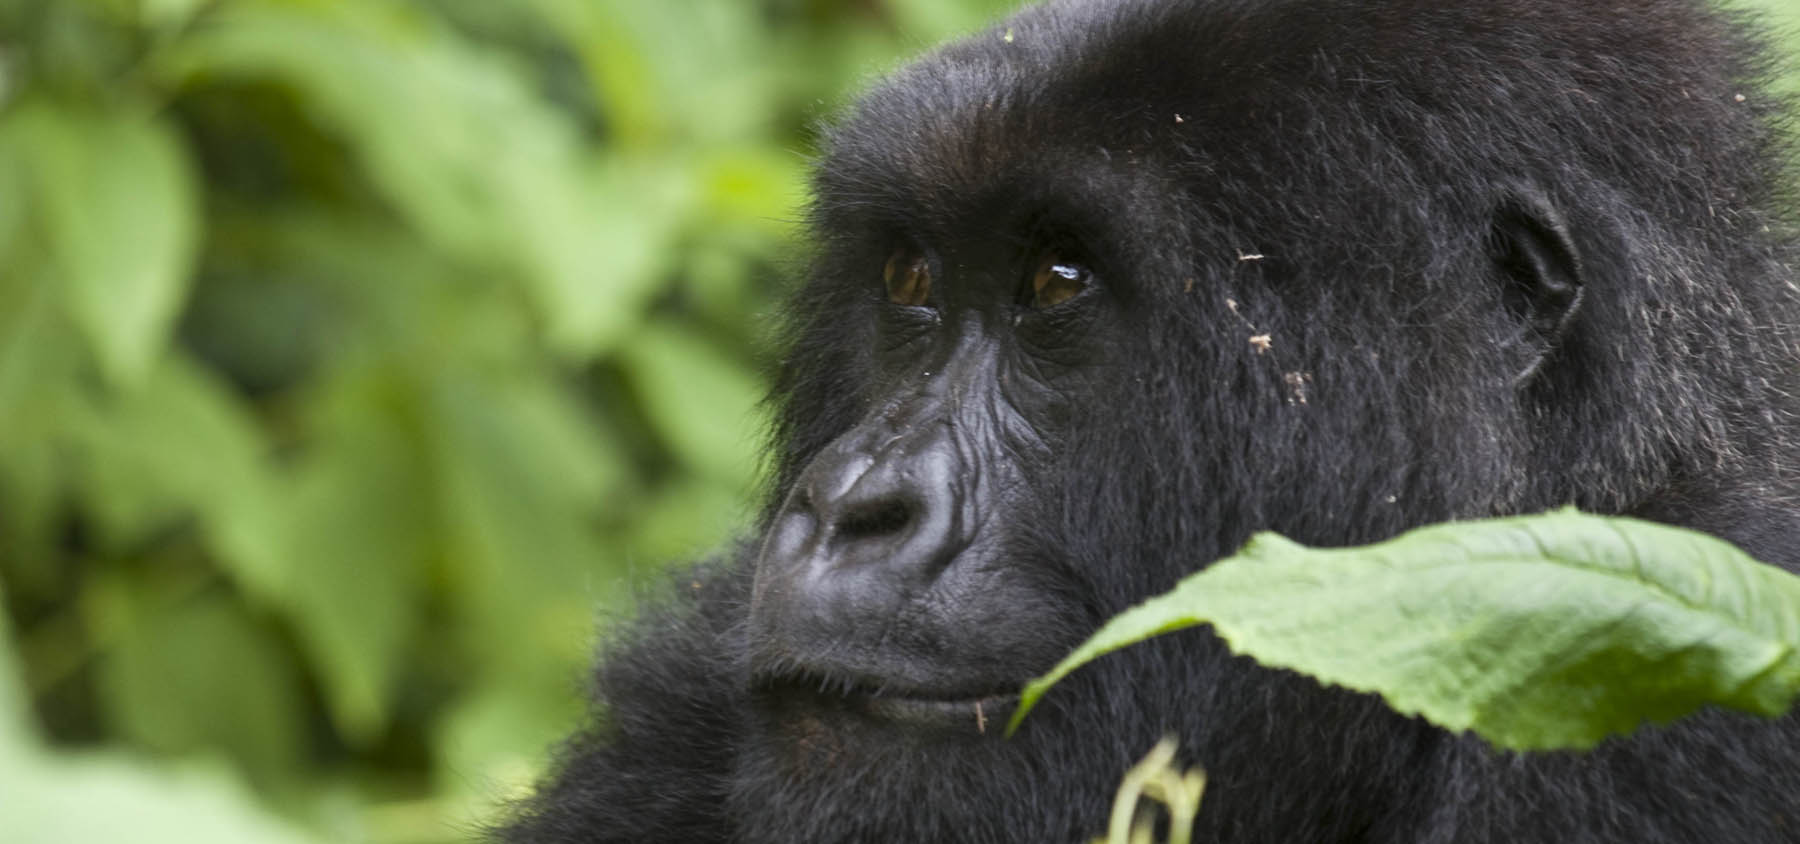 Gorilla-trekking-uganda